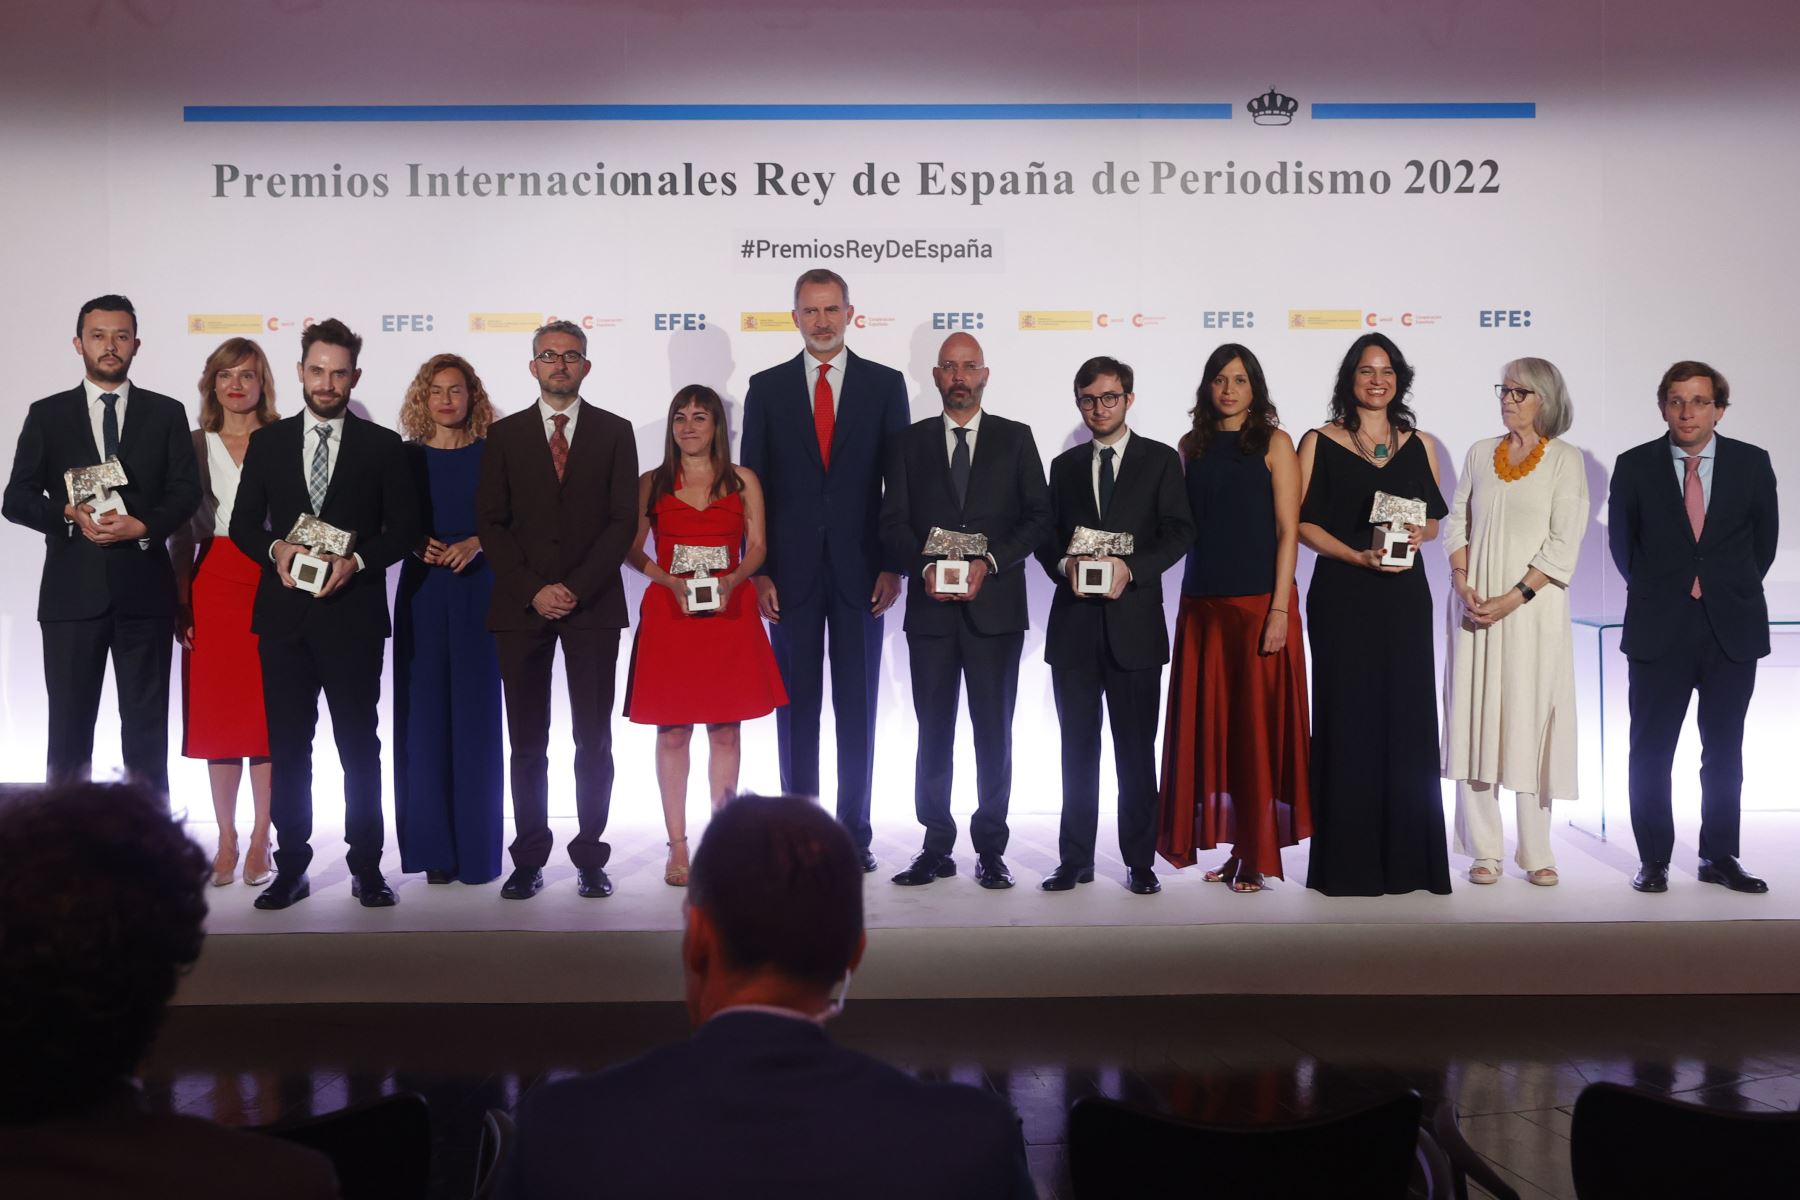 Los Premios Internacionales Rey de España de Periodismo los concede anualmente desde 1983 la Agencia Española de Cooperación Internacional para el Desarrollo (Aecid) y la Agencia EFE. Foto: EFE